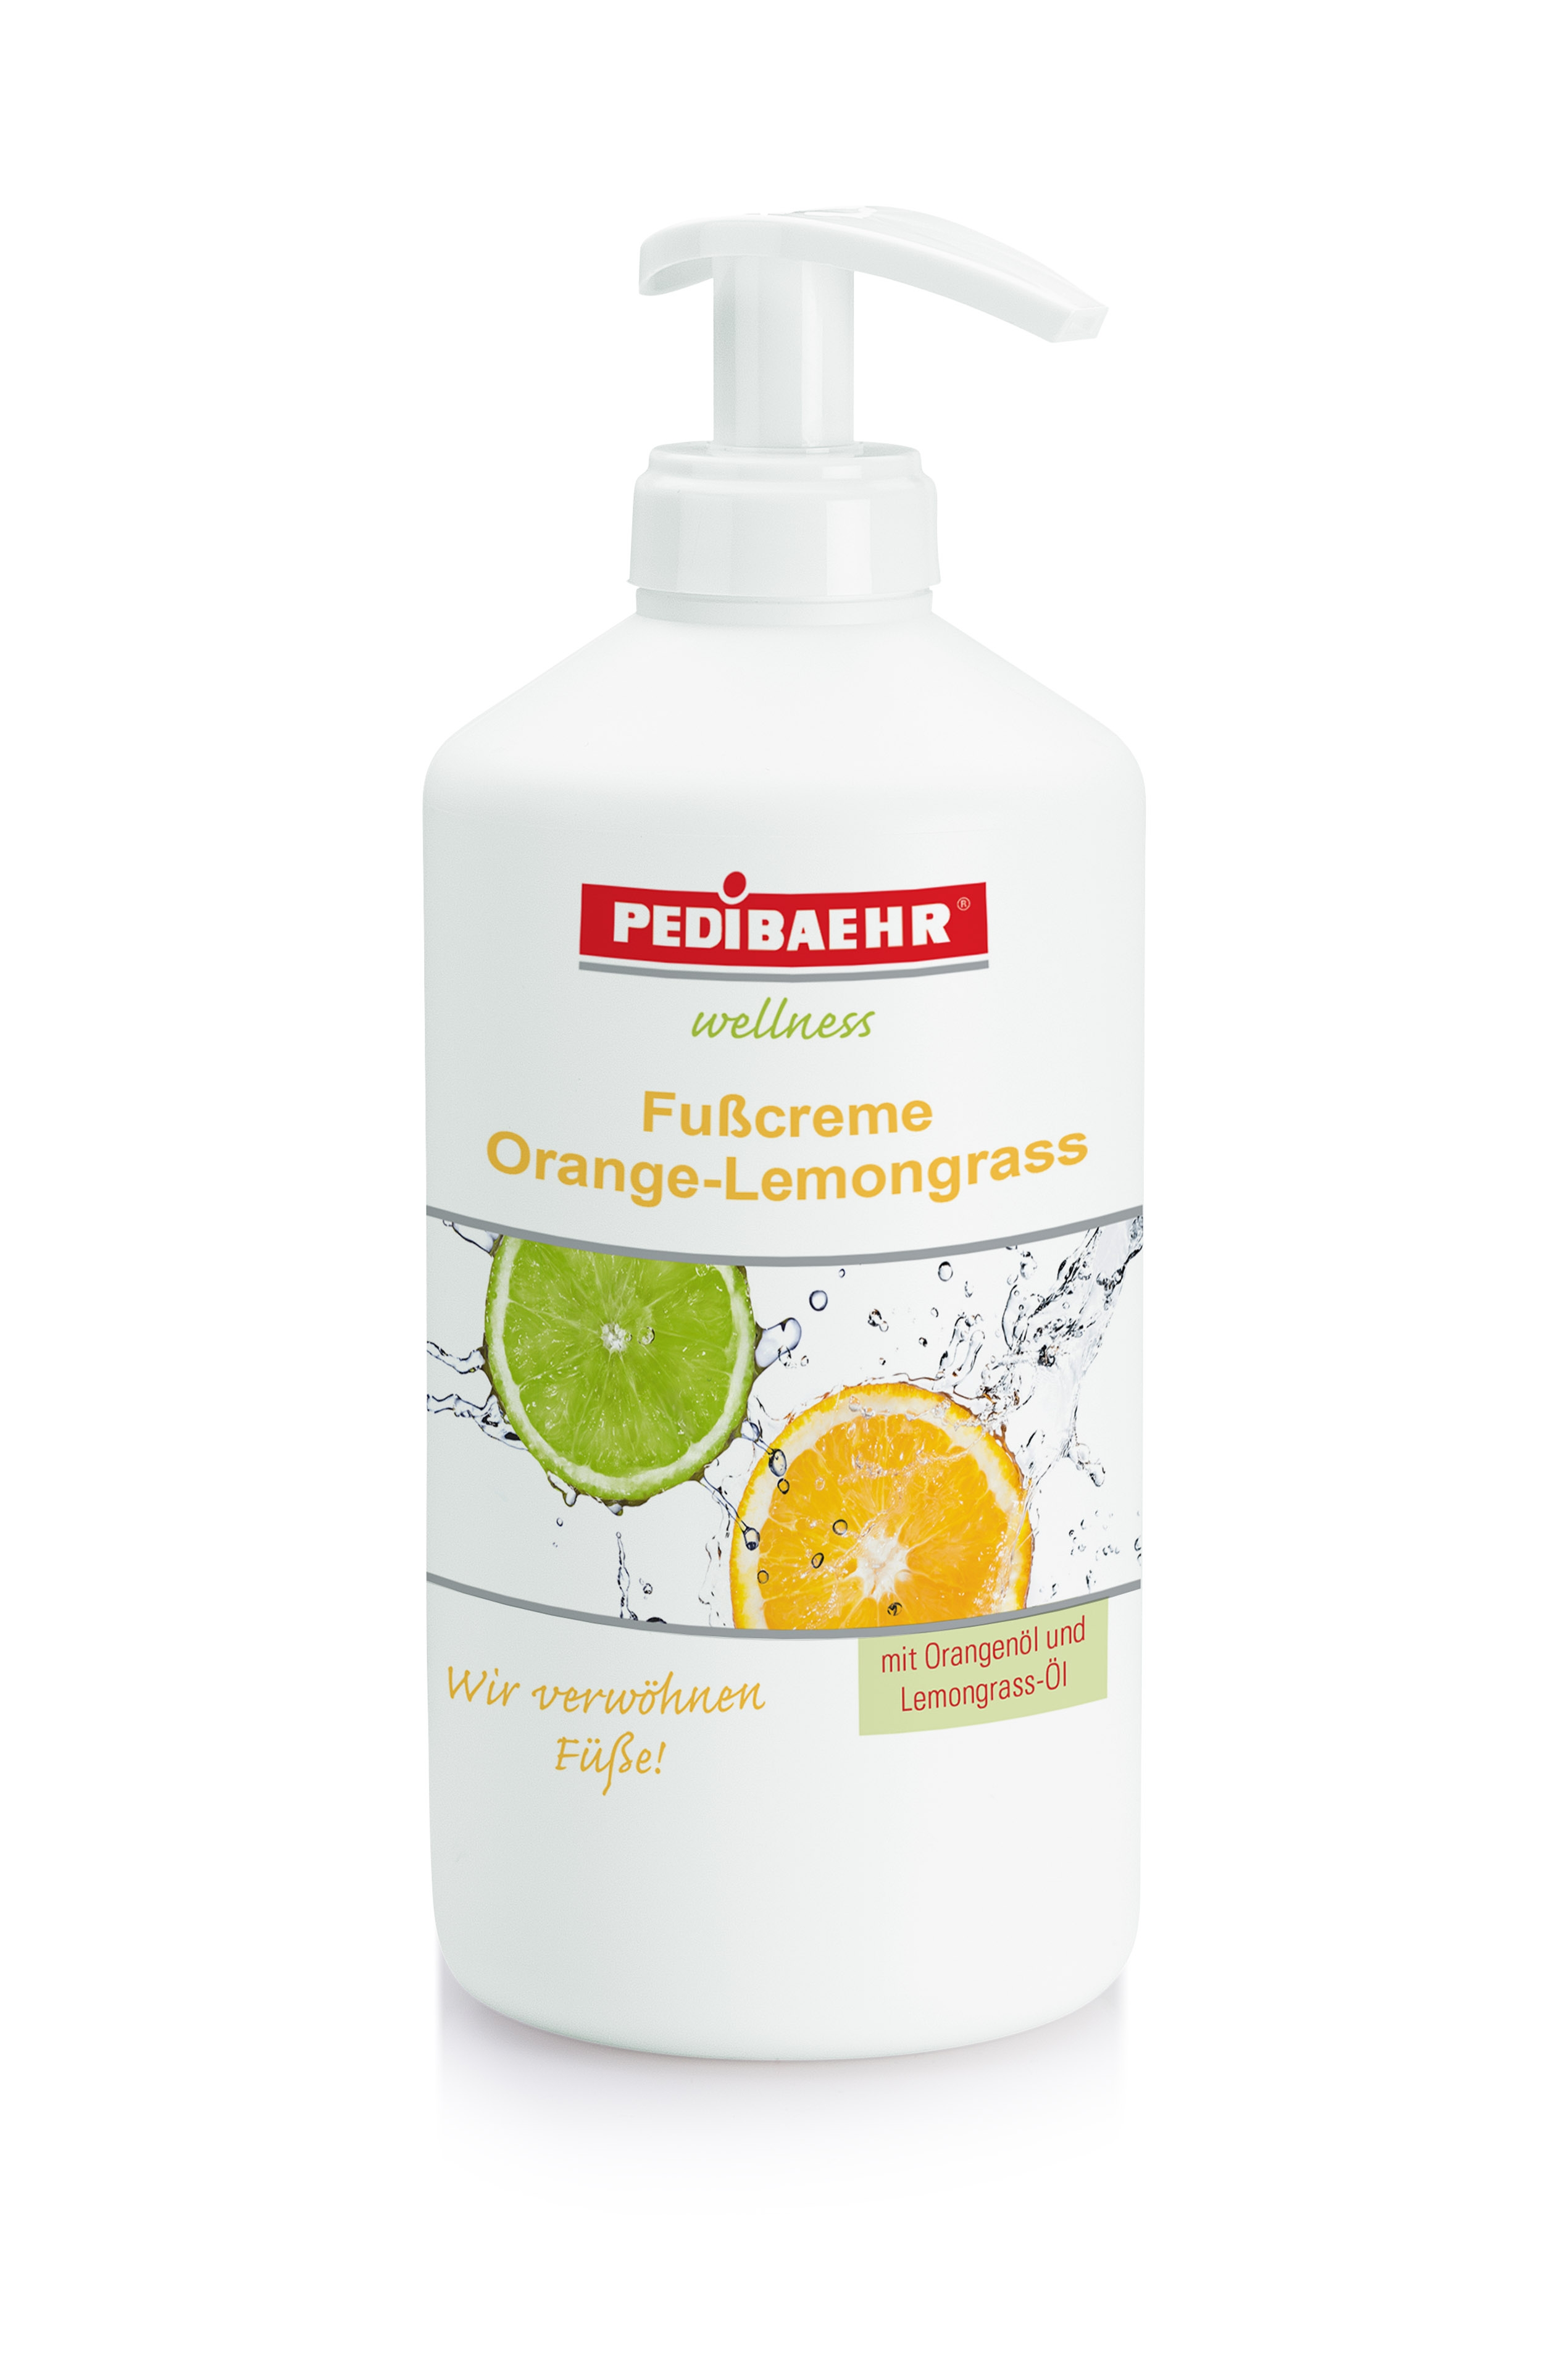 PEDIBAEHR Fusscreme Orange-Lemongrass | 500 ml